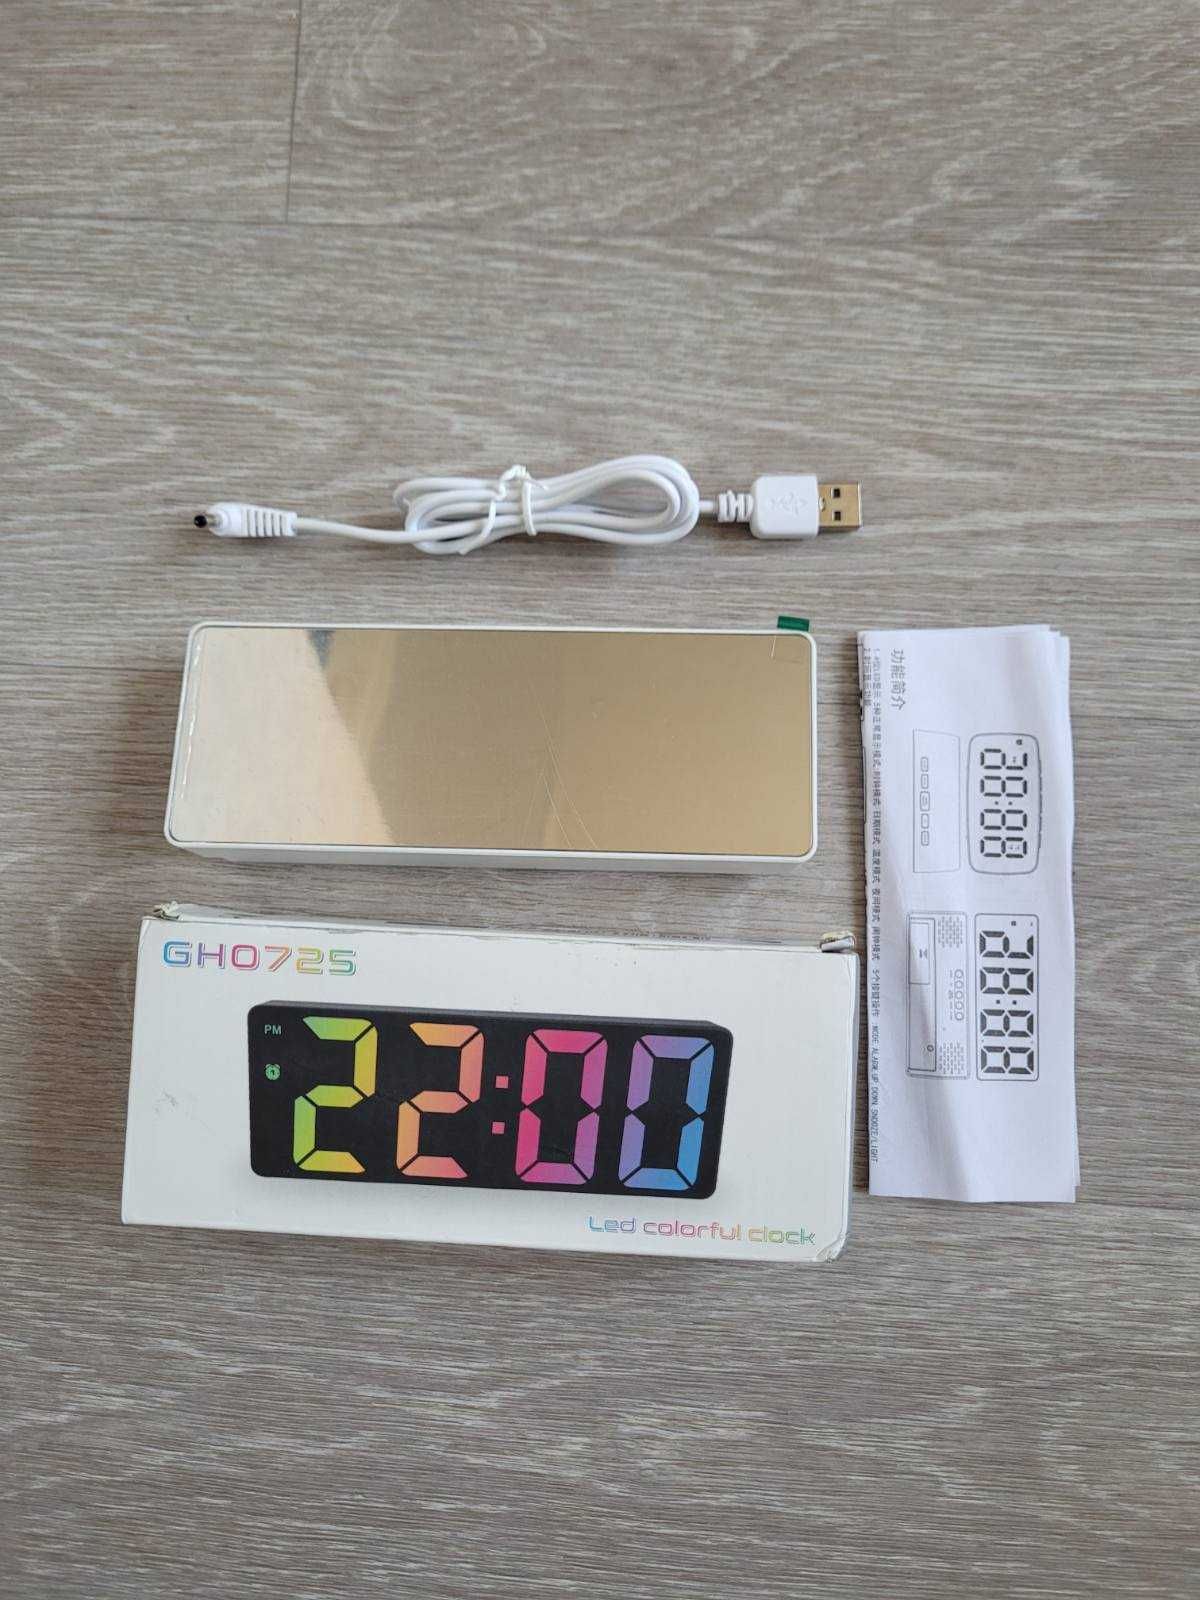 LED часы- будильник GH0725 со светодиодным дисплеем